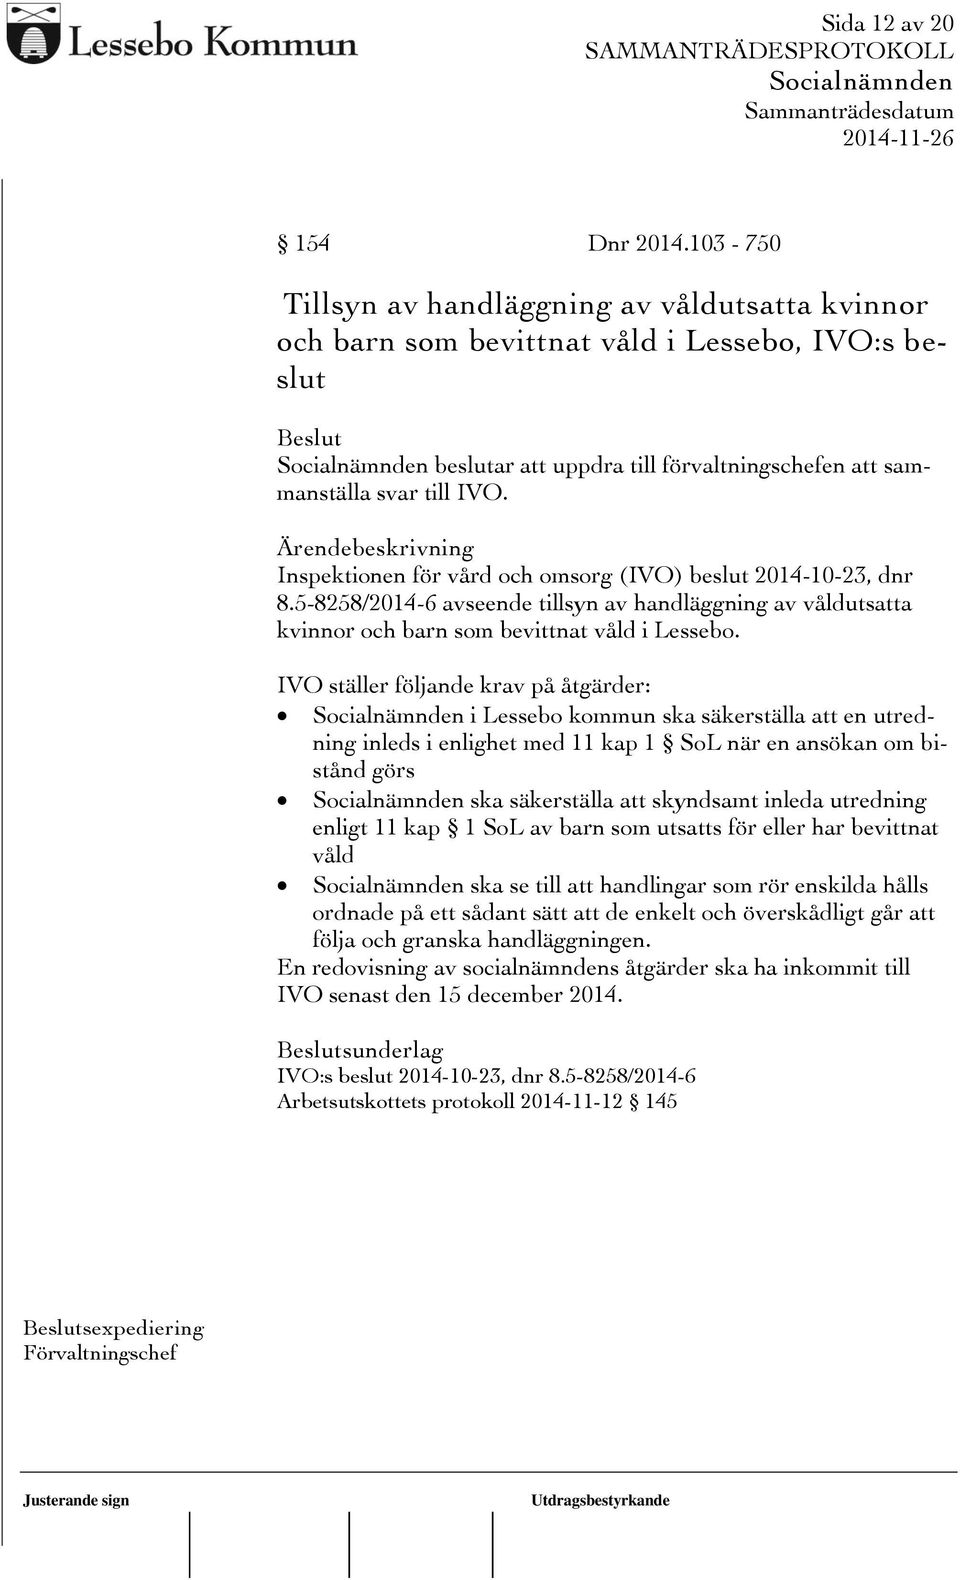 Inspektionen för vård och omsorg (IVO) beslut 2014-10-23, dnr 8.5-8258/2014-6 avseende tillsyn av handläggning av våldutsatta kvinnor och barn som bevittnat våld i Lessebo.